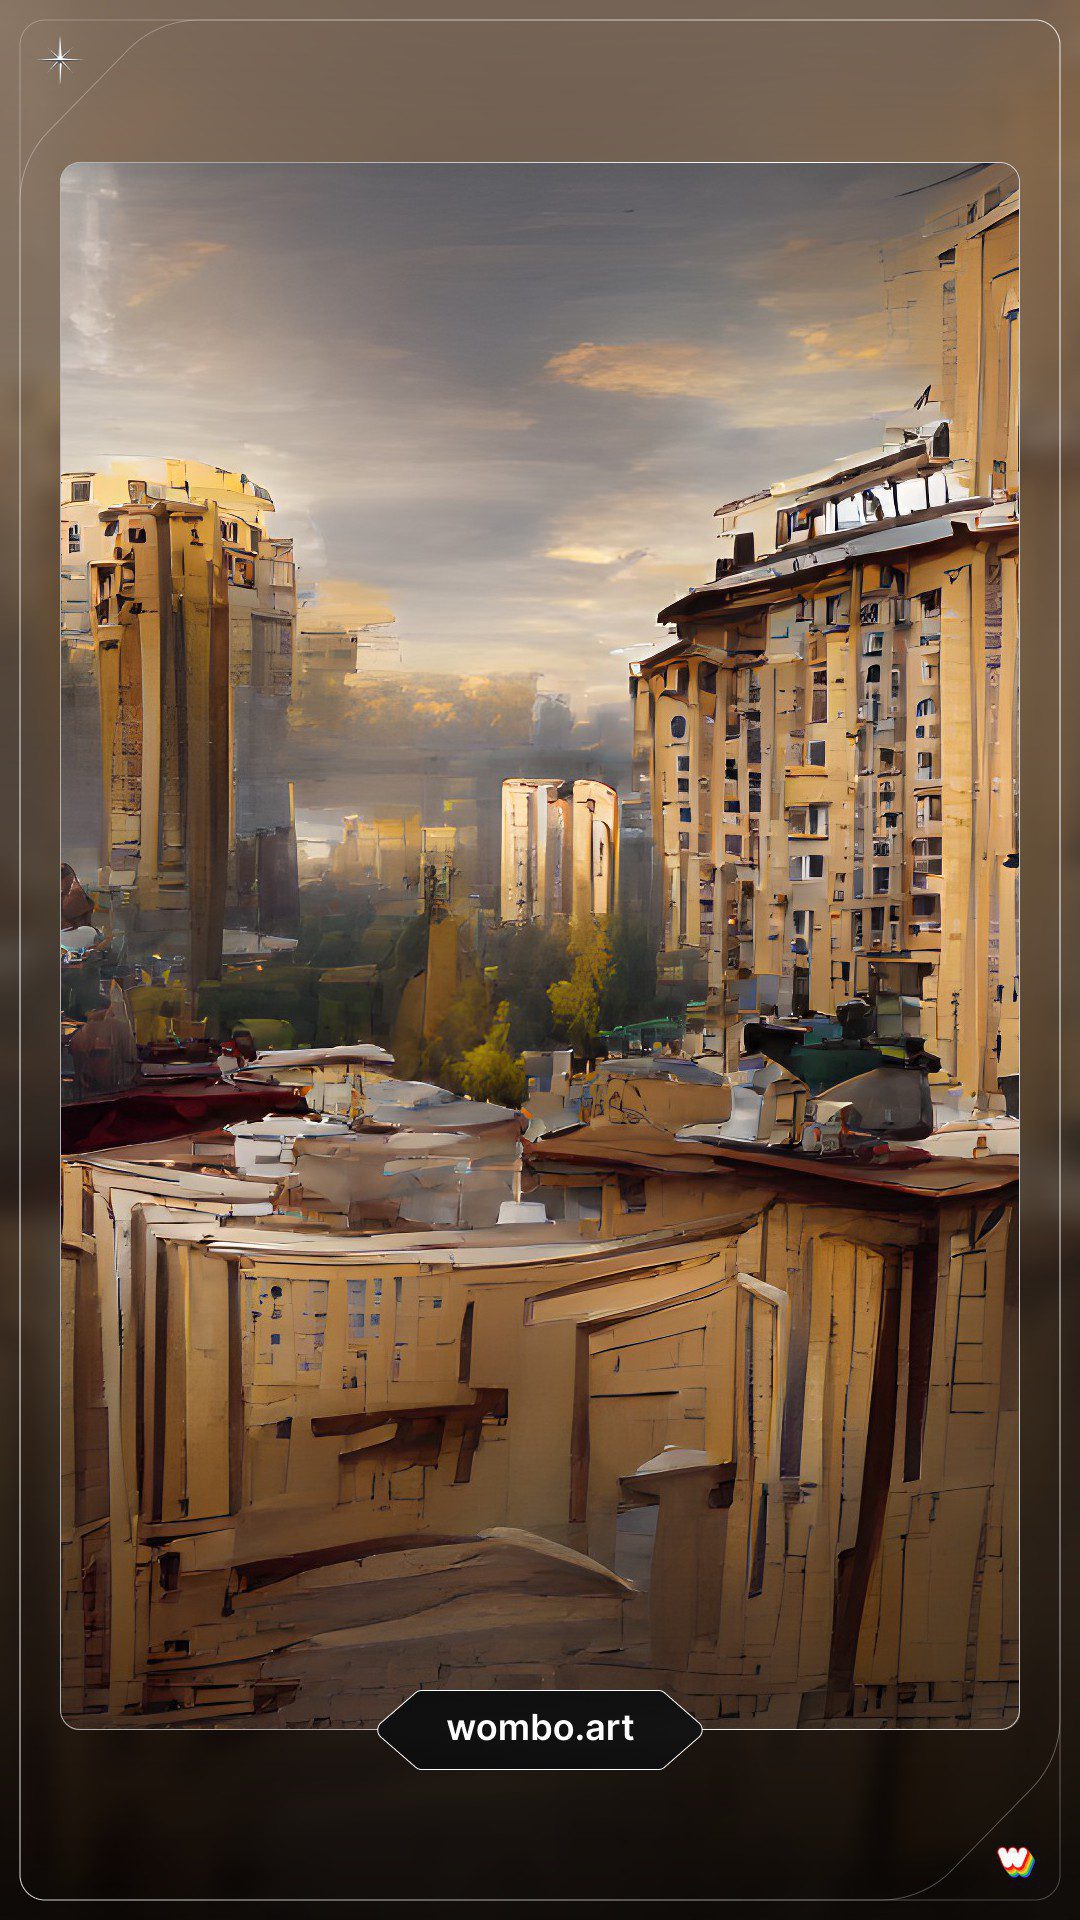 Покупка квартиры в Харькове